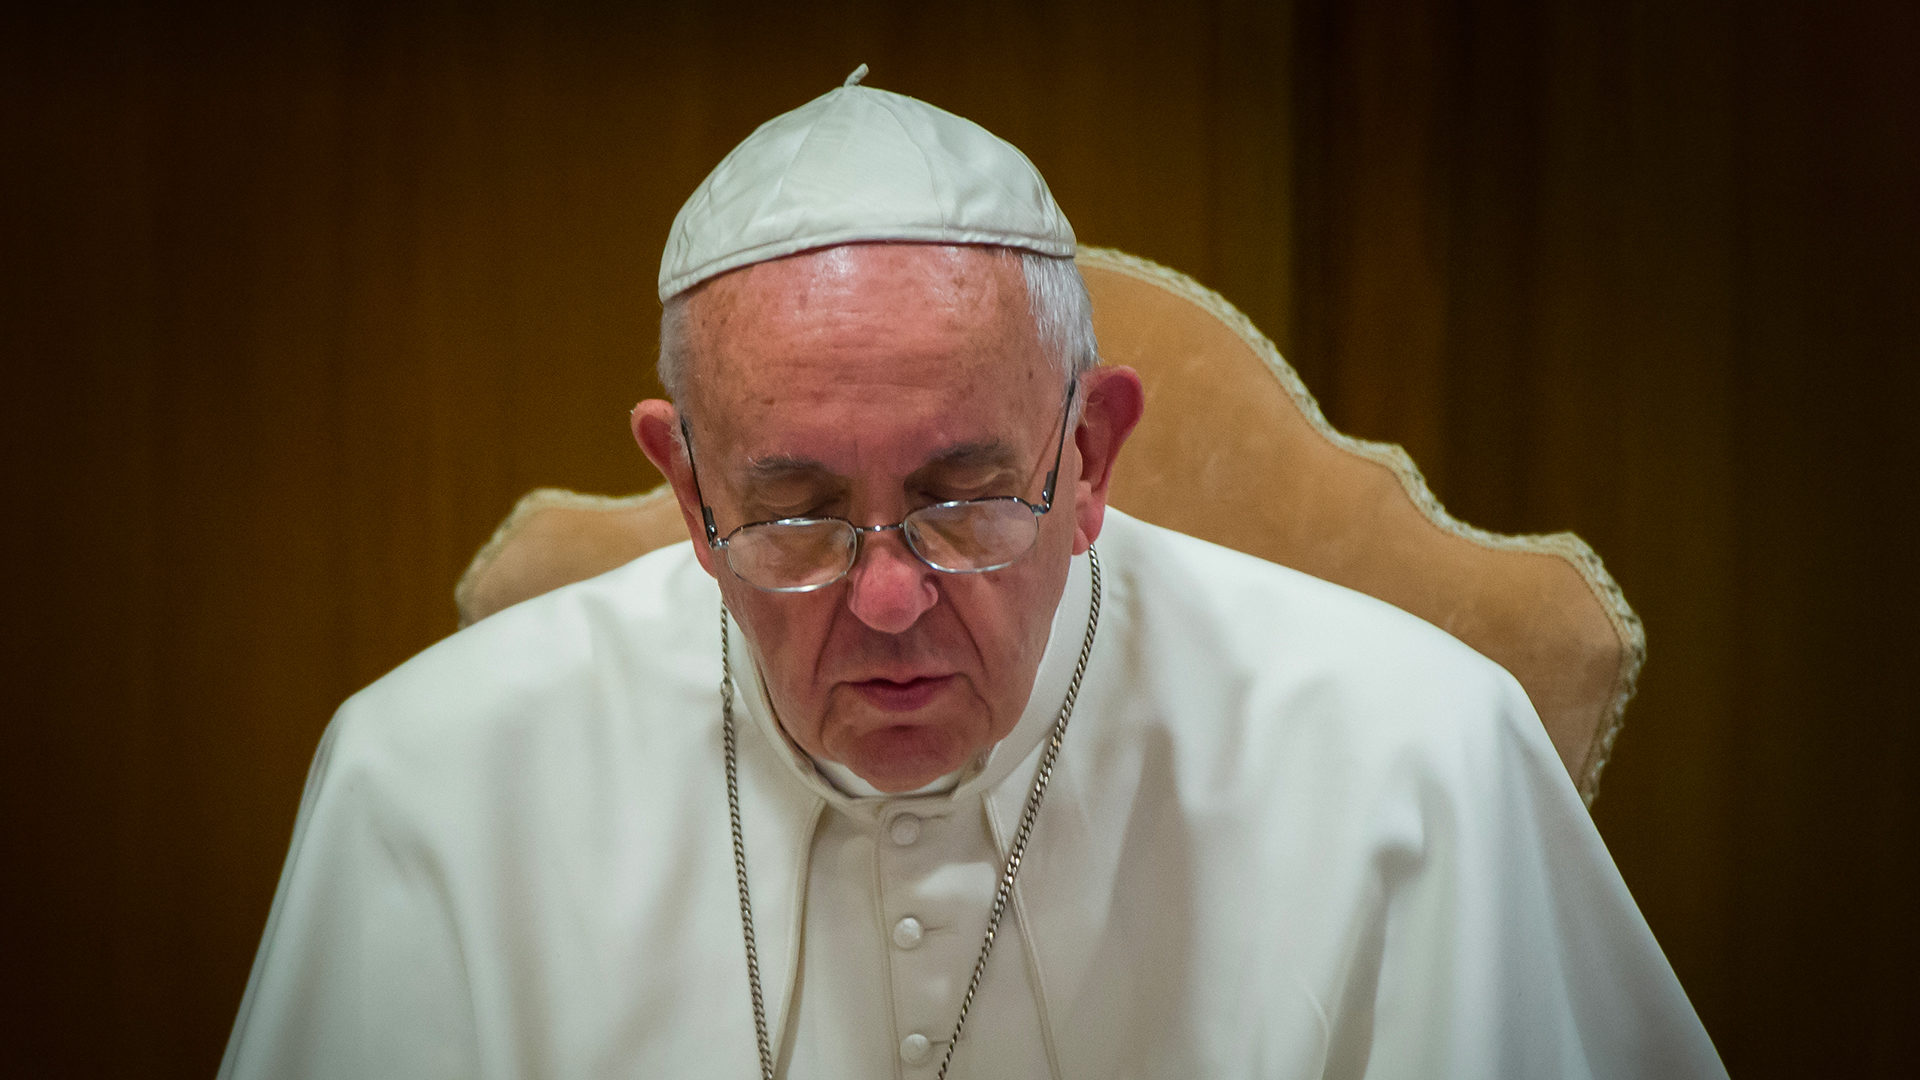 Le pape François impose de nouvelles normes contre les abus sexuels | © Flickr cc